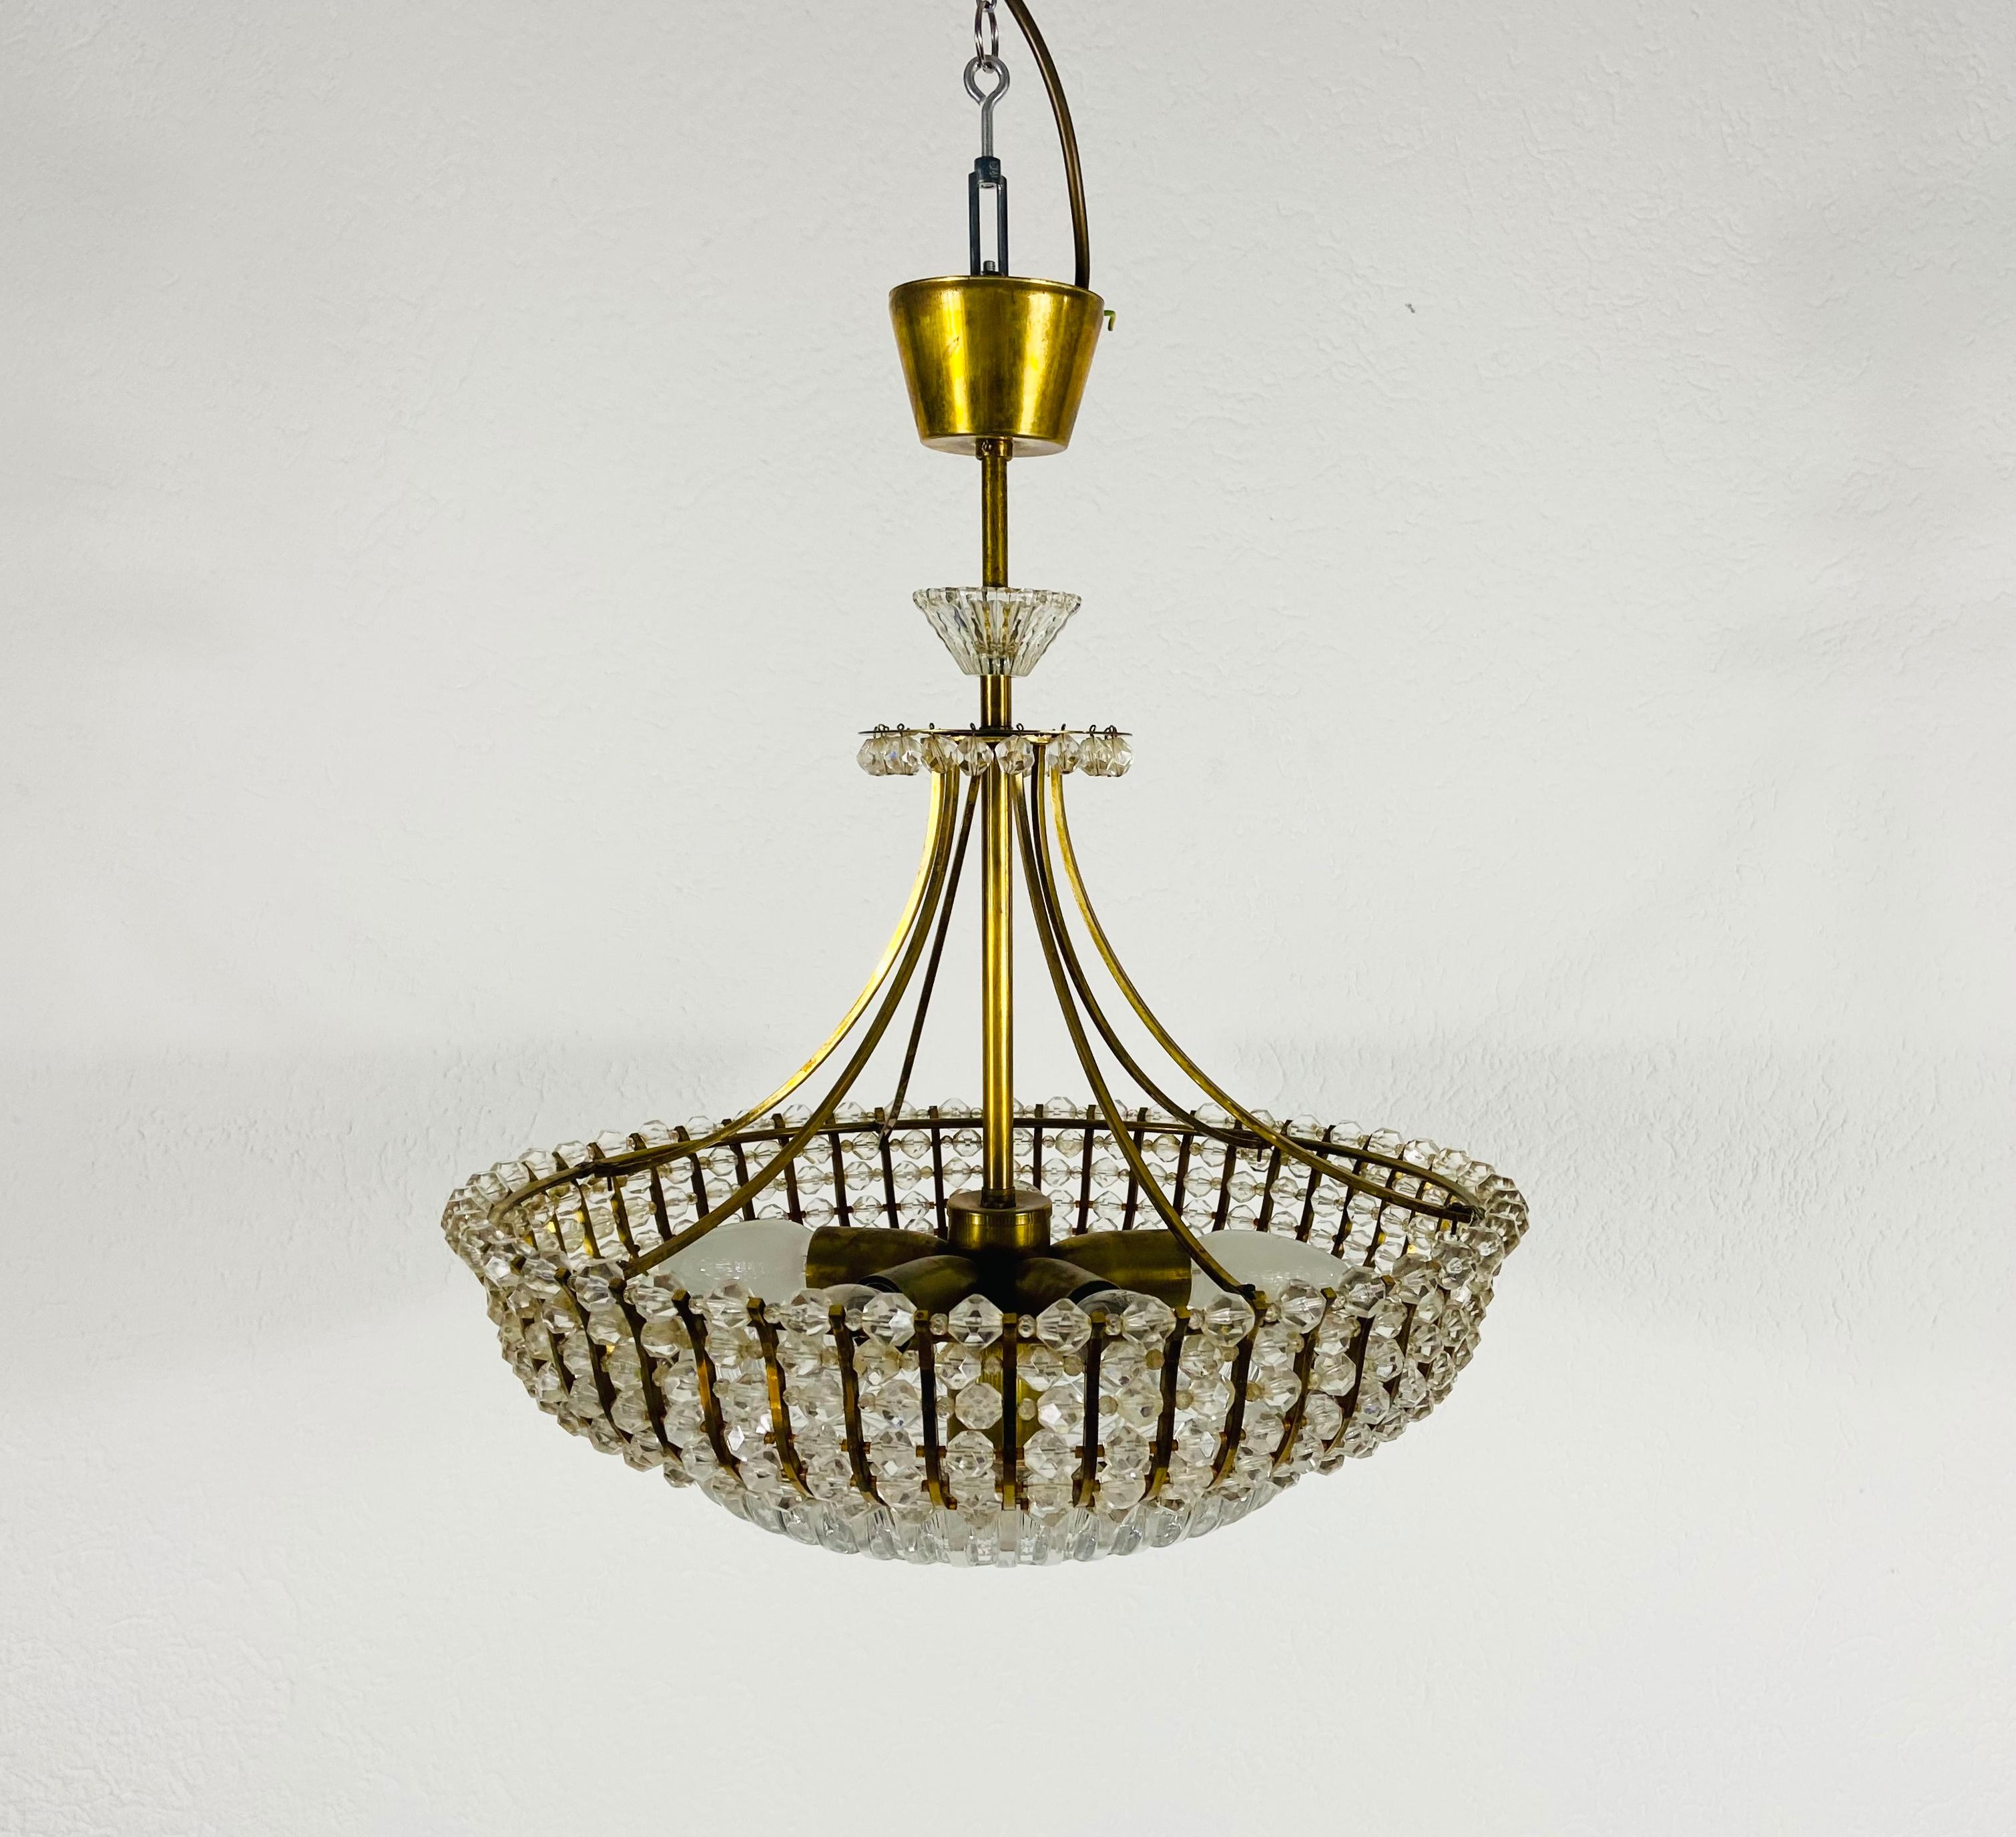 Ein Messinglüster von Rupert Nikoll, Österreich, aus den 1960er Jahren. Die Beleuchtung hat ein erstaunliches Midcentury-Design. Er ist aus Messing und kleinen Gläsern gefertigt und passt perfekt in ein Wohnzimmer. Die Leuchte hat ein sehr schönes